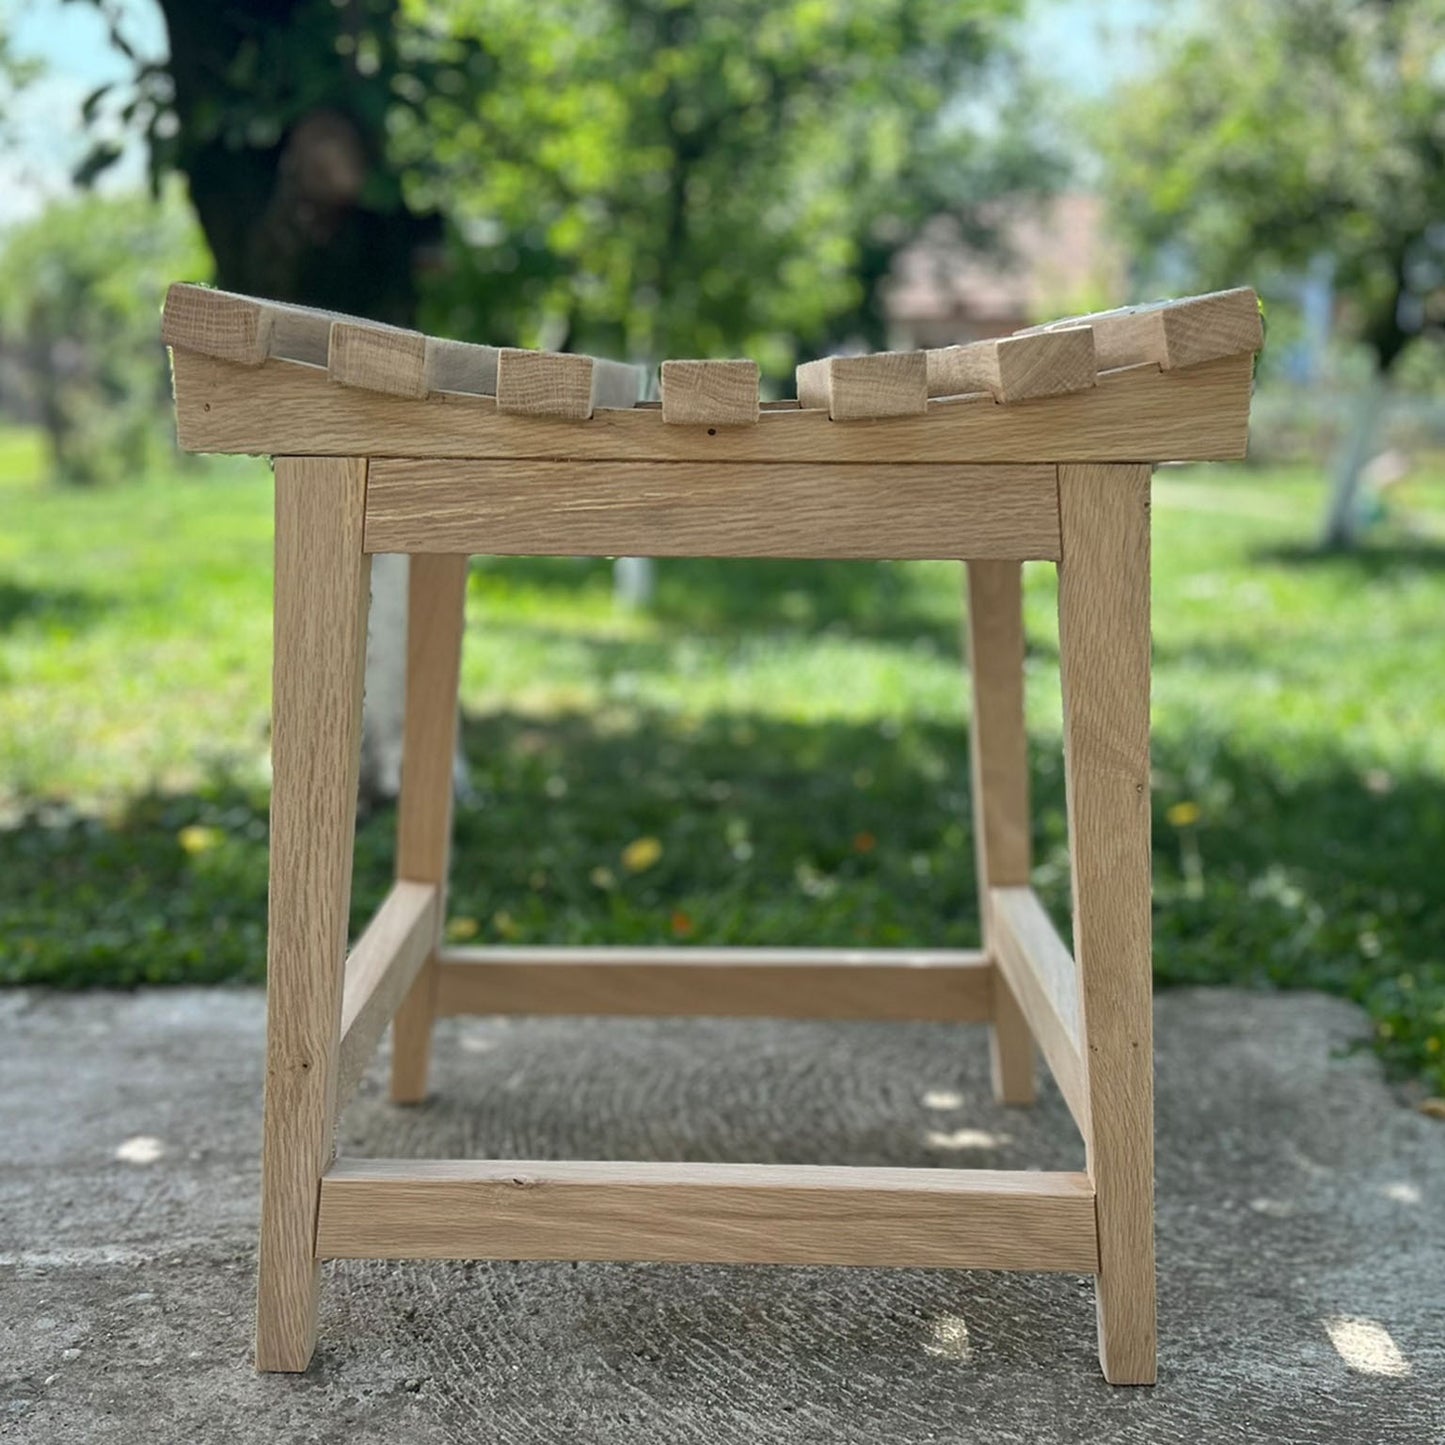 Ottoman garden stool